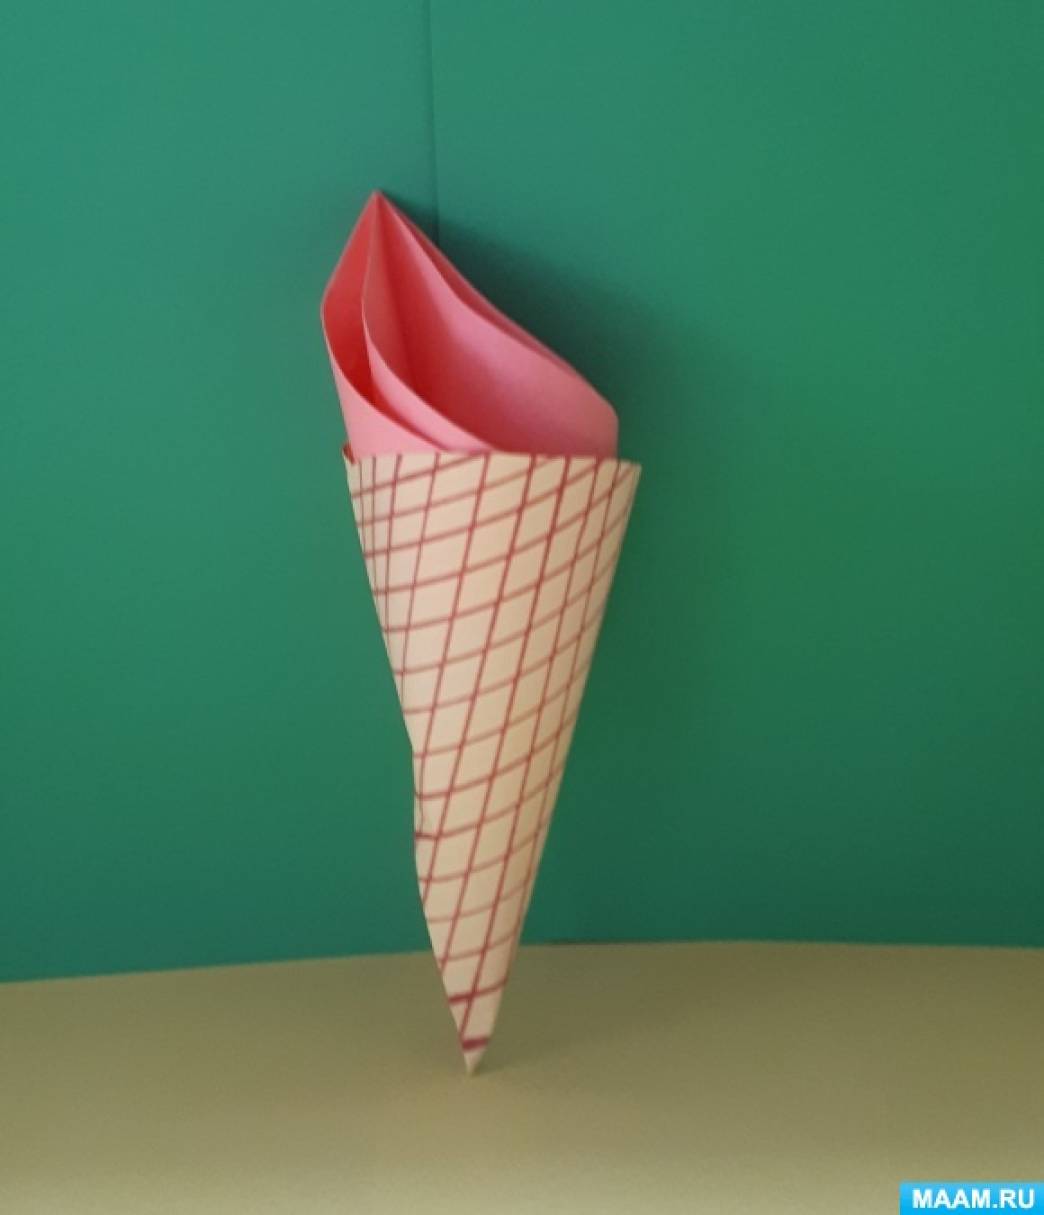 Как сделать оригами мороженое | DIY Origami Ice cream - YouTube | アイスクリーム クラフト, アイスクリーム, クラフト